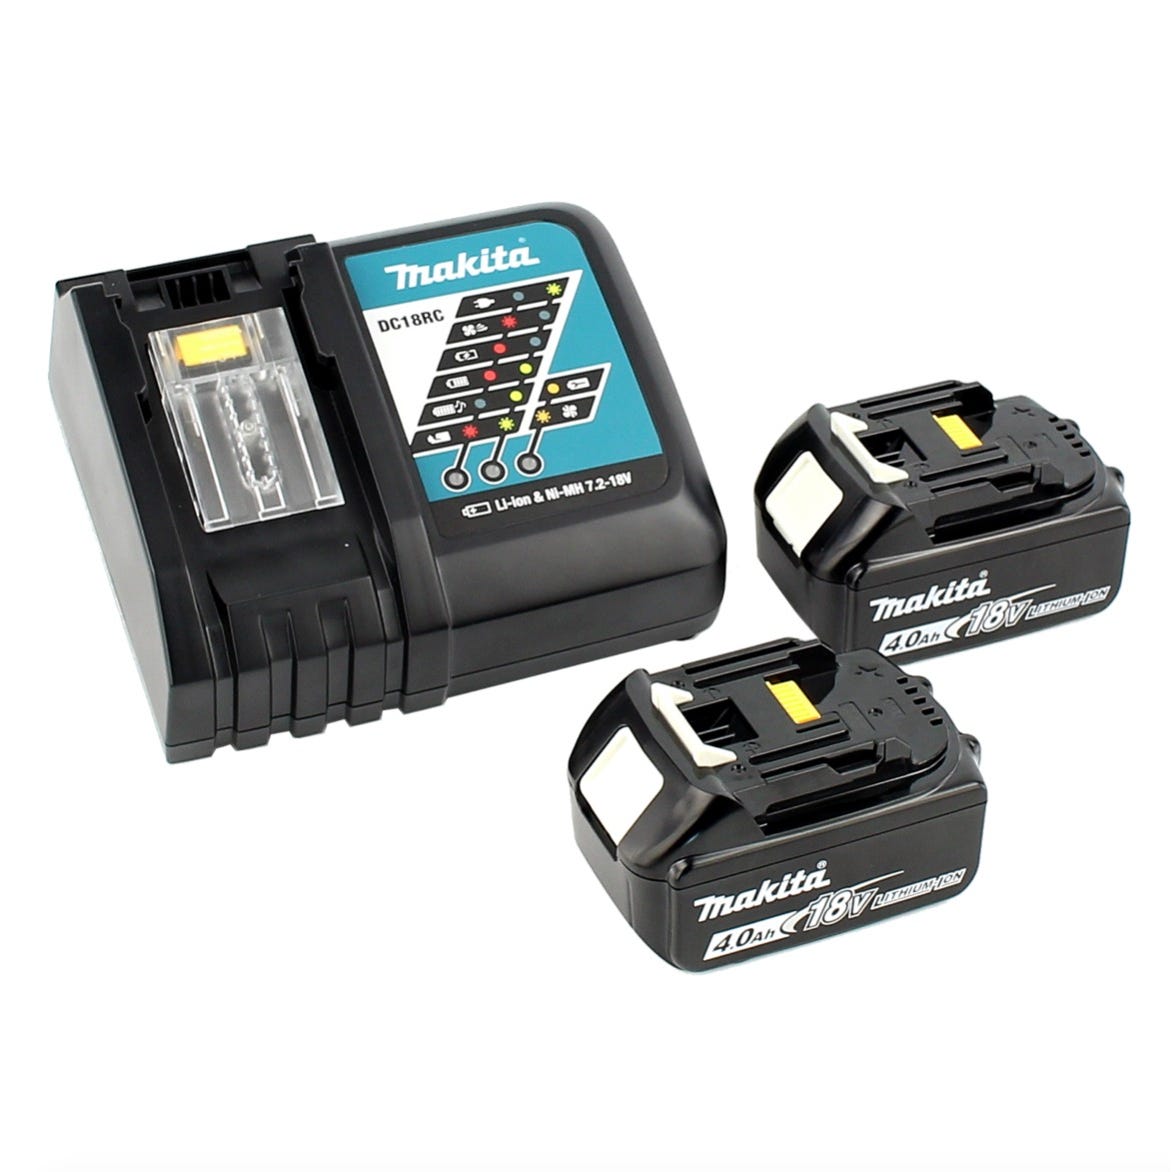 Makita DFR 750 RMJ Visseuse automatique sans fil à Magasin 18V 45-75mm + 2x Batteries 4,0Ah + Chargeur + Coffret Makpac 3